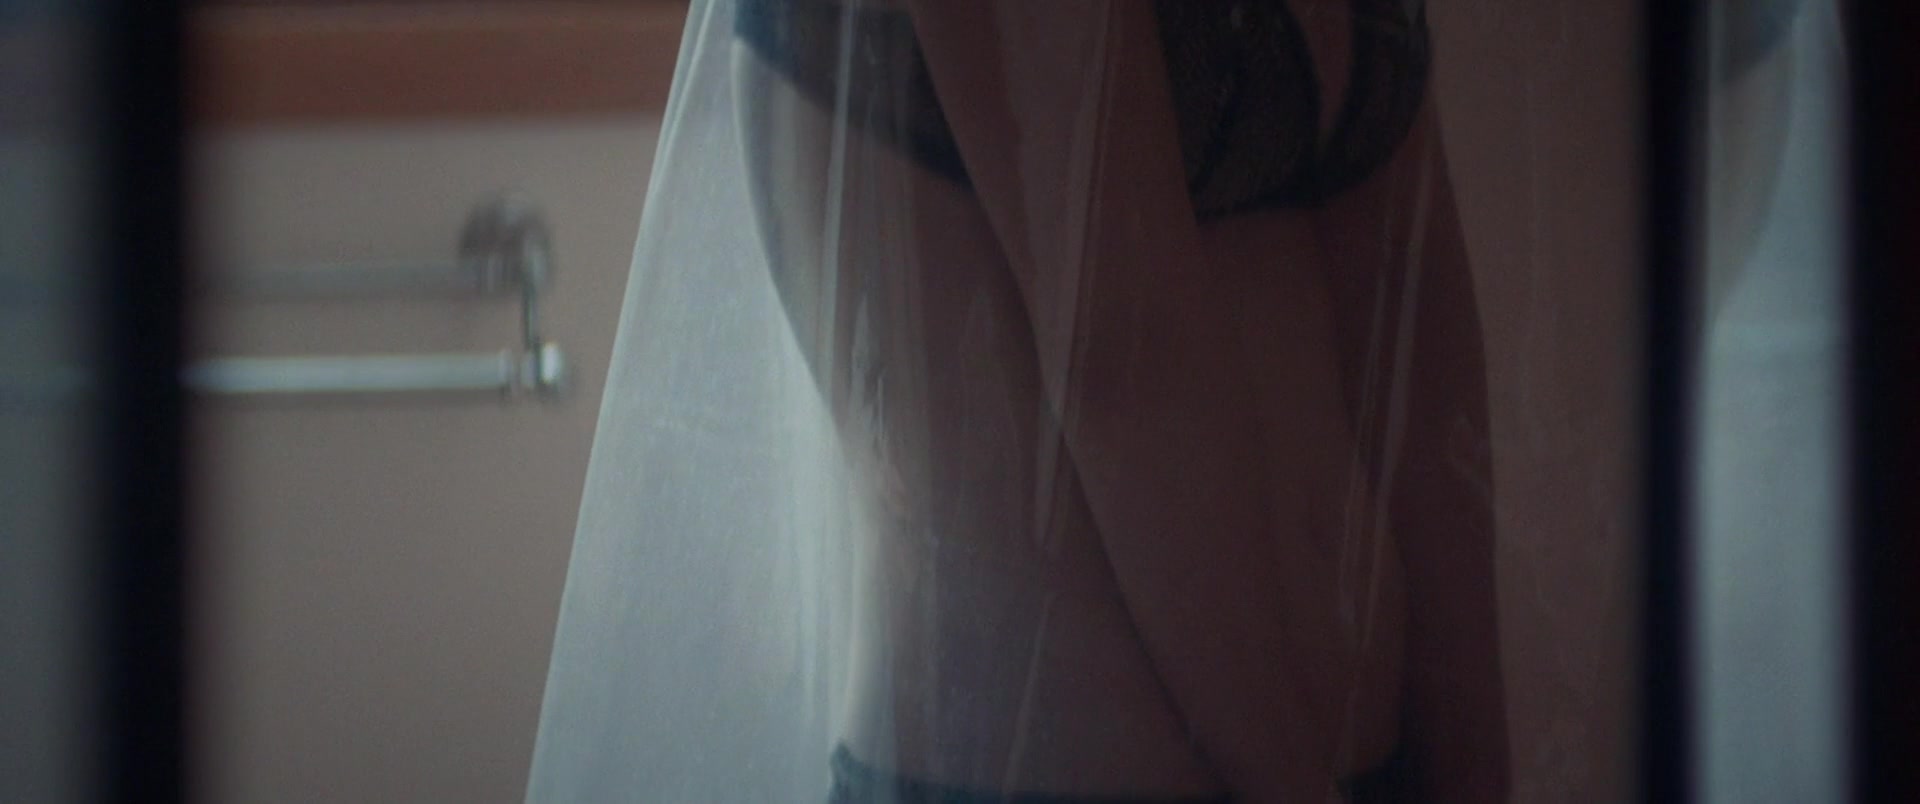 Kirsten Dunst - Woodshock 1080p BluRay 0145.jpg